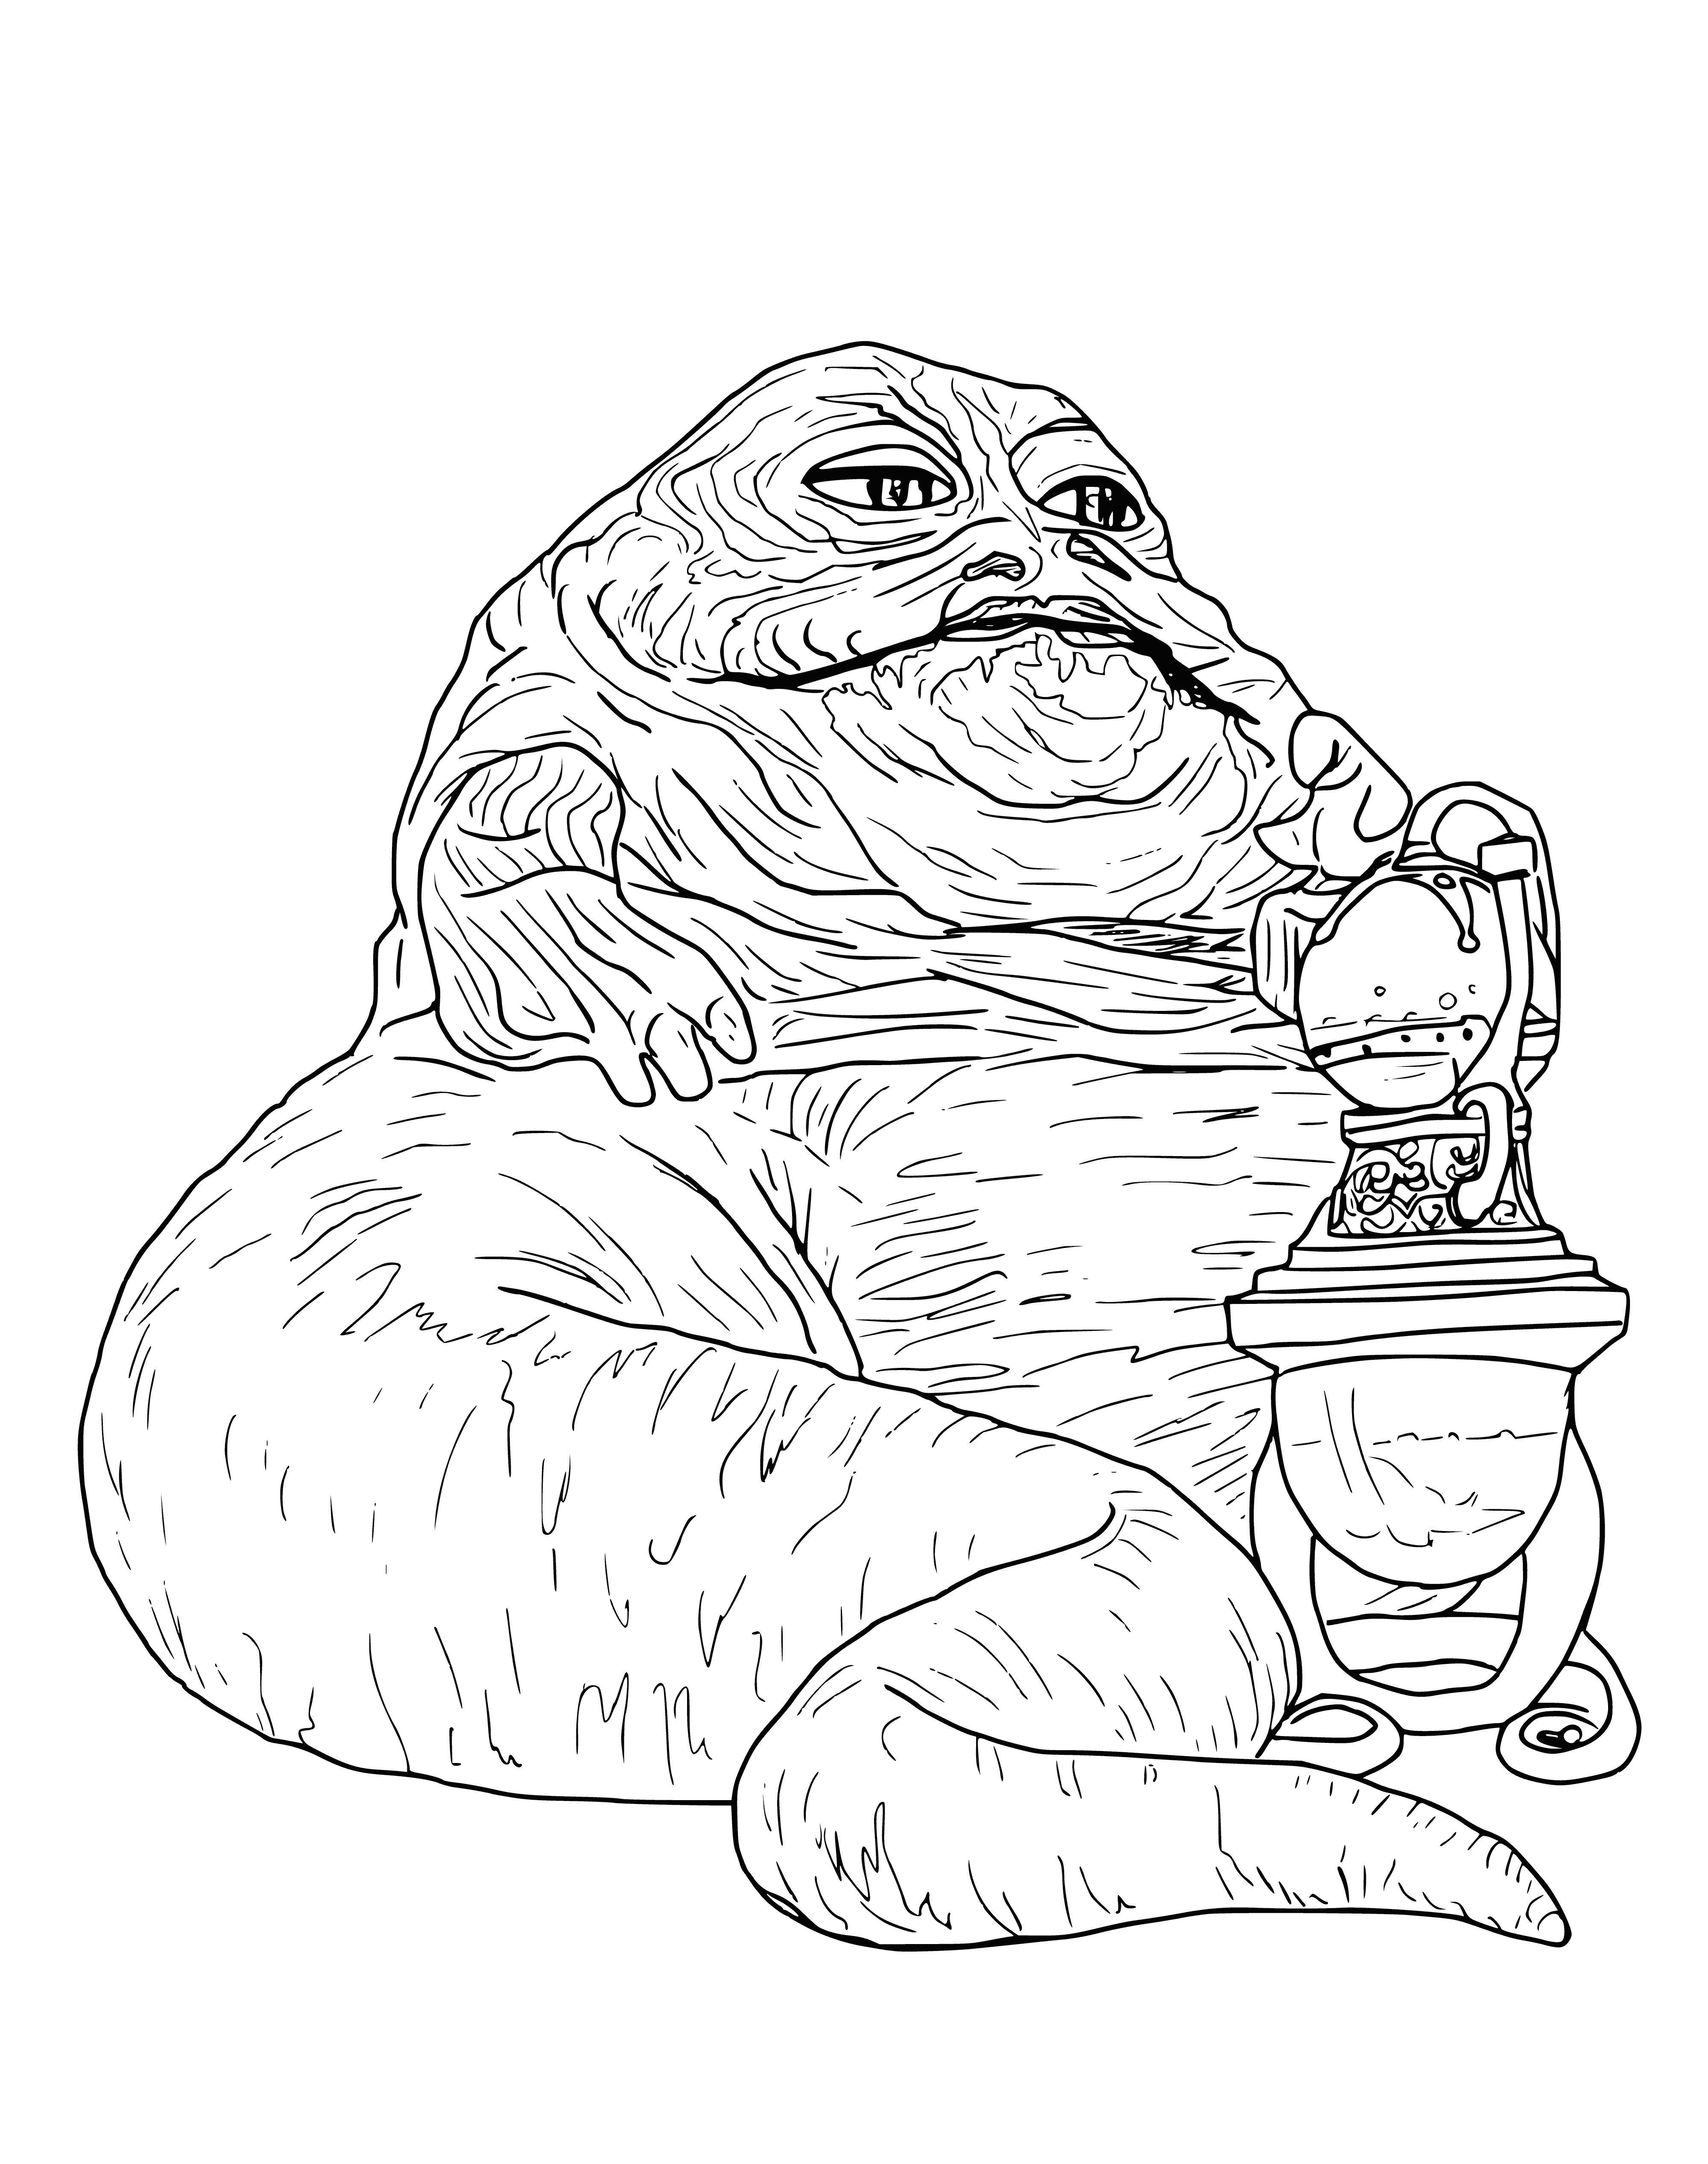 Le chef des contrebandiers Jabba le Hutt coloriage